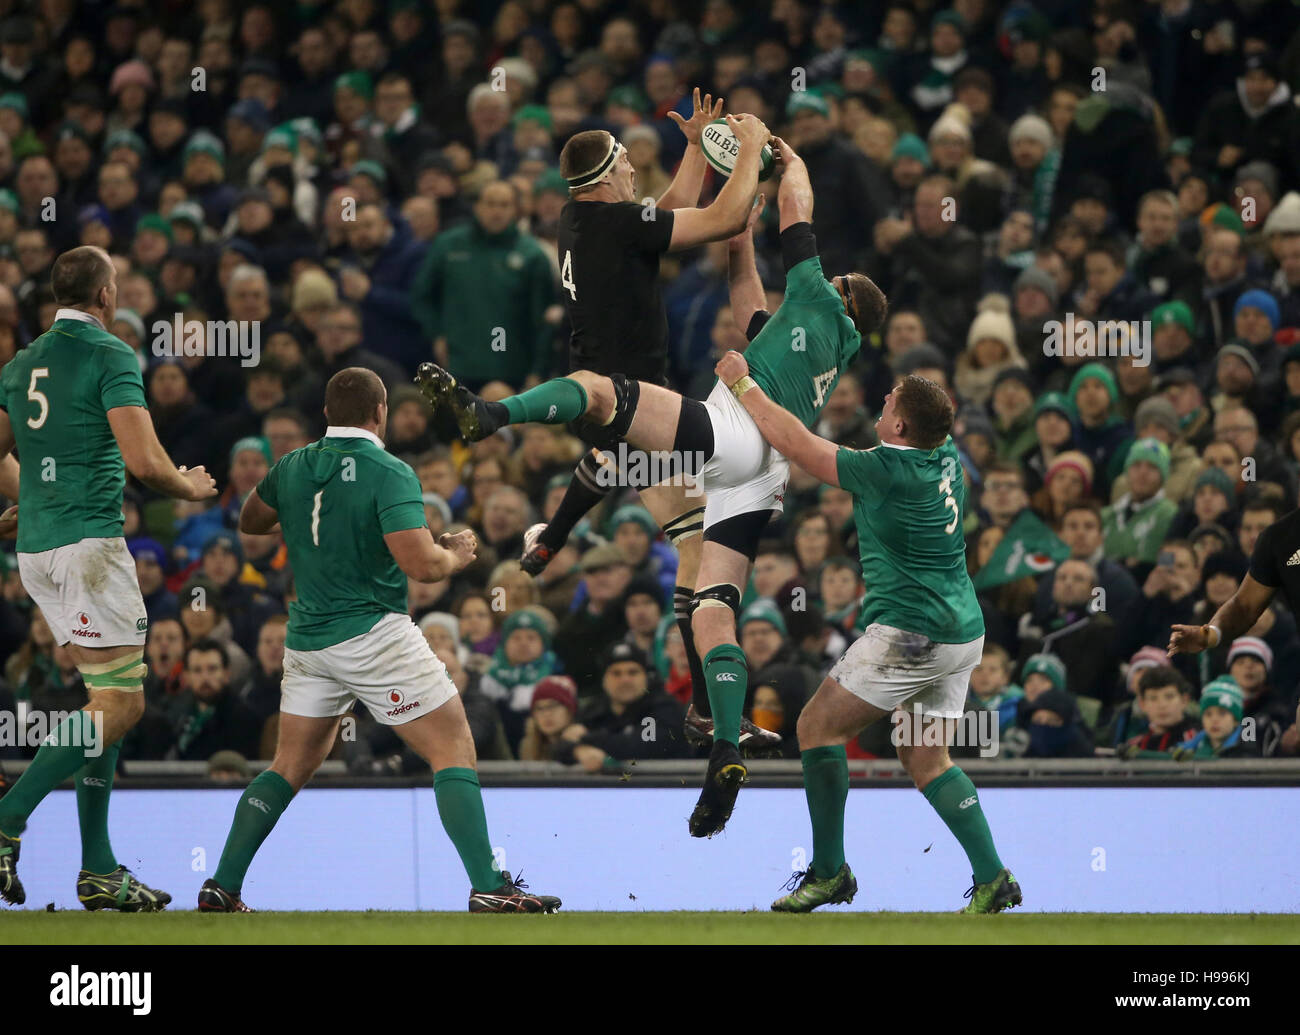 Irlands Donnacha Ryan und New Zealand Brodie Retallick konkurrieren um einen hohen Ball während des Spiels Herbst International im Aviva Stadium Dublin. Stockfoto